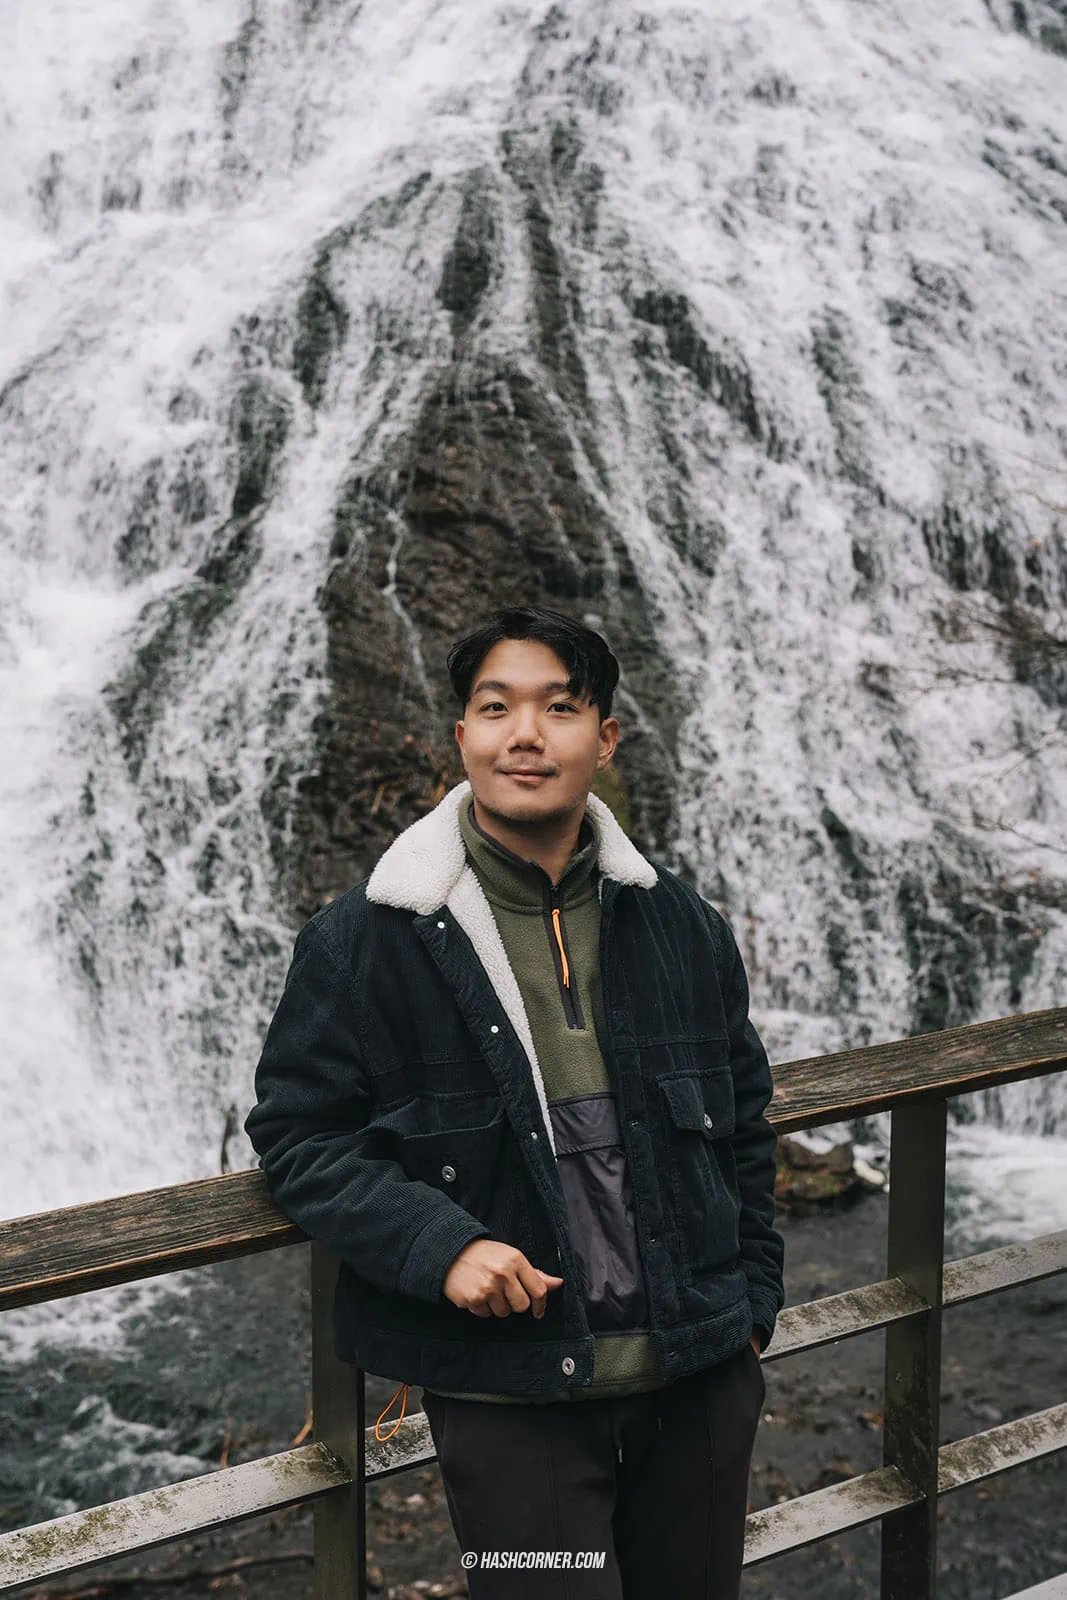 รีวิว น้ำตกยูดากิ (Yudaki Falls) x นิกโก้ เที่ยวน้ำตกดังแบบฉ่ำใจ